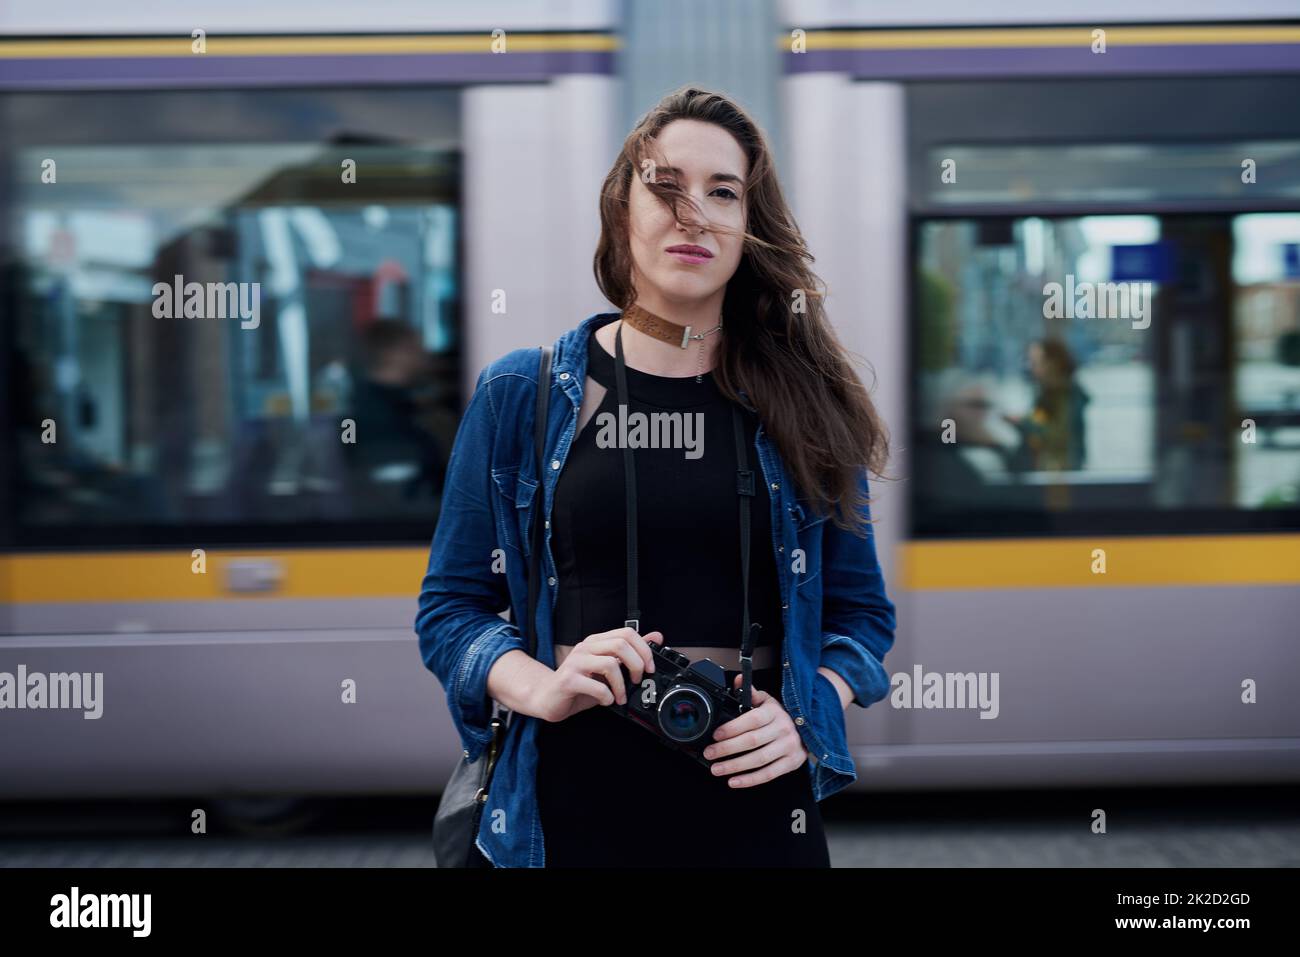 Je suis toujours à l'affût d'une occasion de prendre des photos. Portrait d'une jeune photographe féminine attirante debout dans le métro avec un train traversant en arrière-plan. Banque D'Images